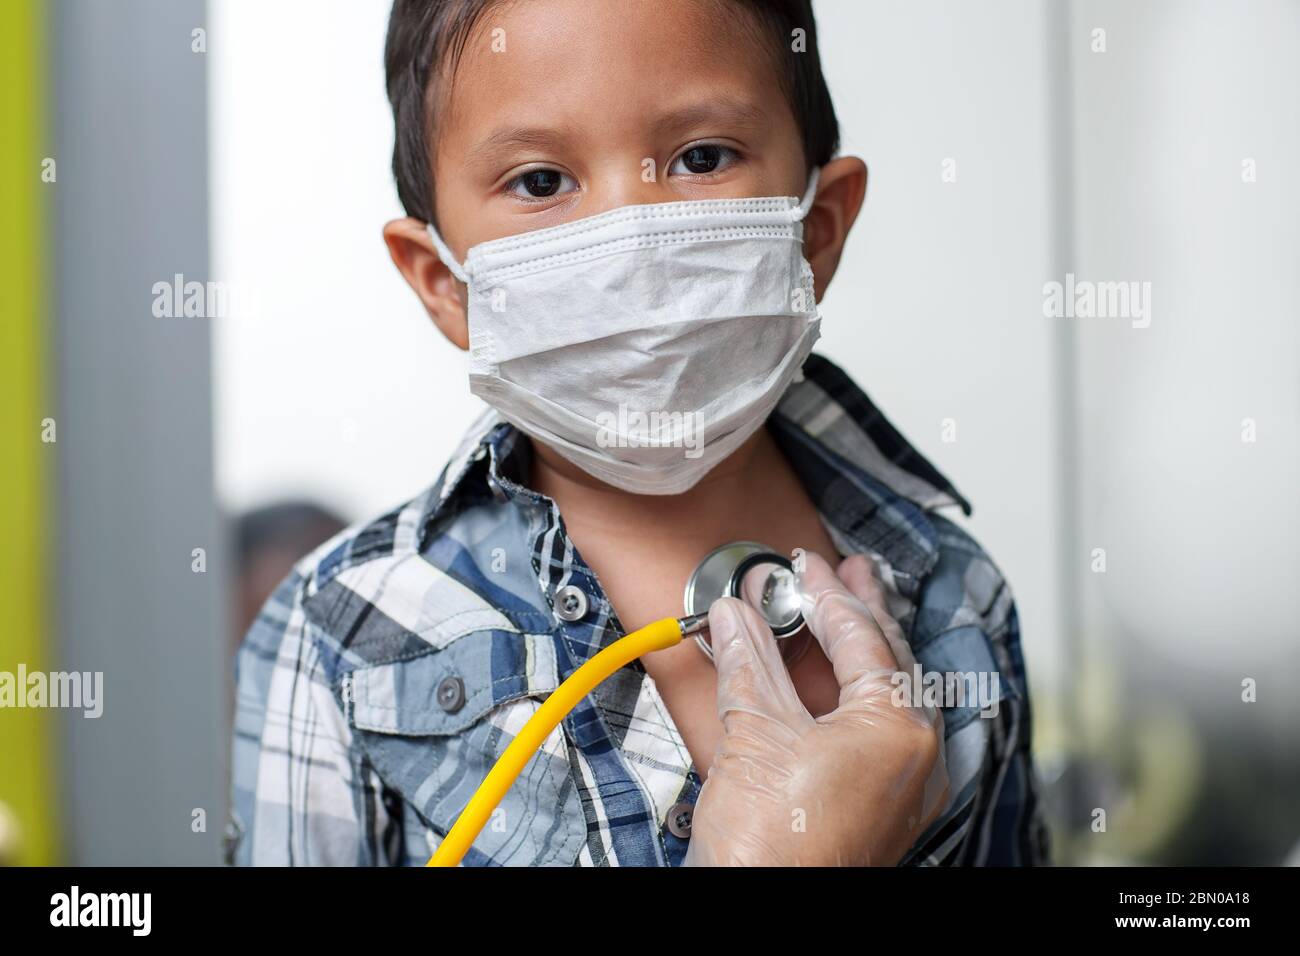 L'enfant portant un masque médical pour prévenir la propagation du virus obtient un dépistage cardiaque avec stéthoscope placé sur la poitrine. Banque D'Images